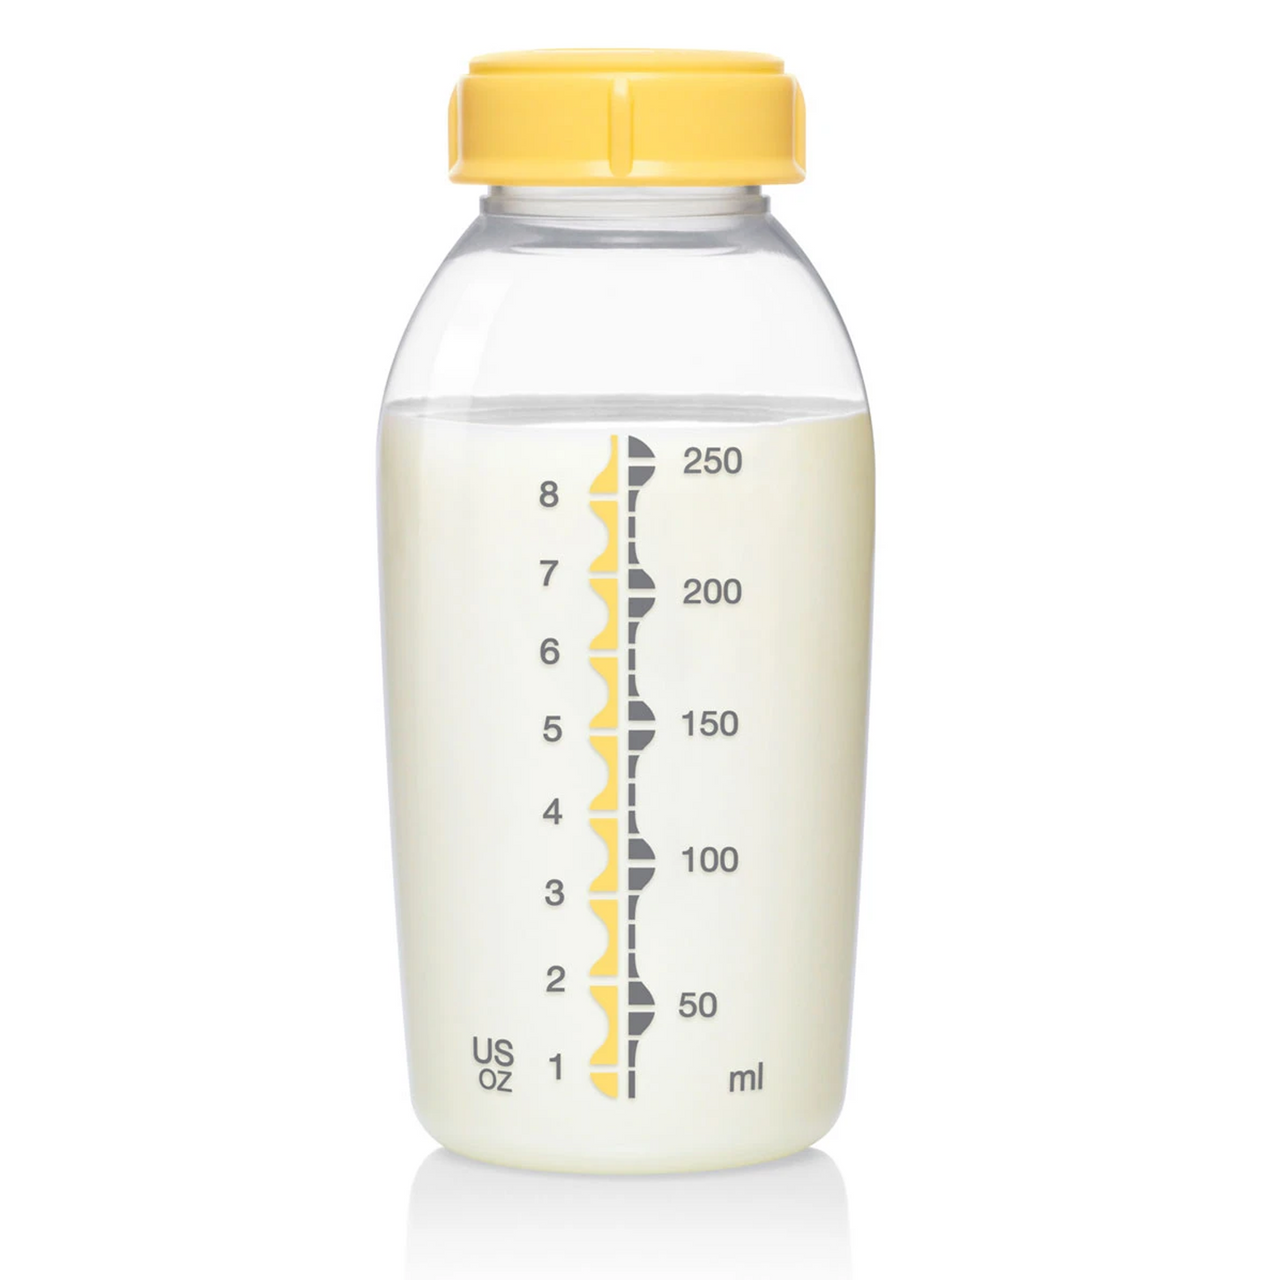 Medela - Biberon pour lait maternel avec tétine 3Pk